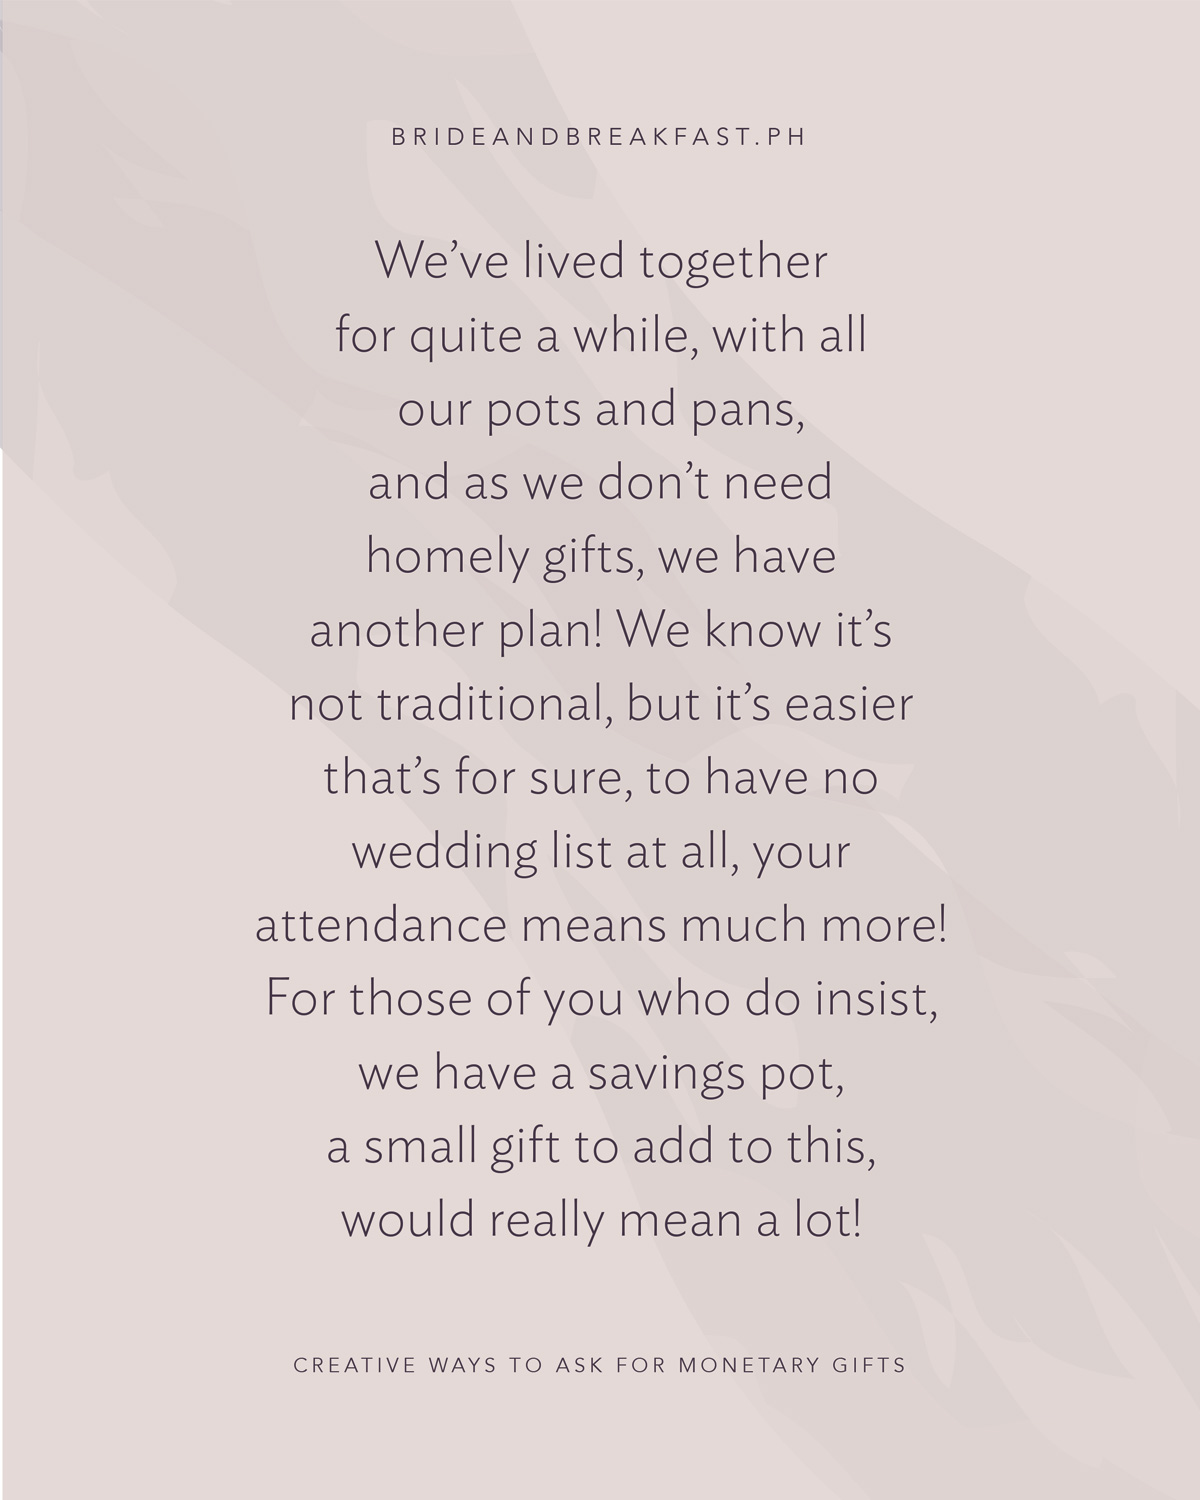 私たちはかなり長い間一緒に住んでいました,すべての私たちの鍋や鍋で,そして私たちは家庭的な贈り物を必要としないように,我々は別の計画を持 私たちはそれが伝統的ではないことを知っていますが、それは確かに、結婚式のリストをまったく持たない方が簡単です、あなたの出席ははるかに多 主張する人のために、私たちは貯蓄ポット、これに追加する小さな贈り物を持って、本当に多くのことを意味するでしょう！